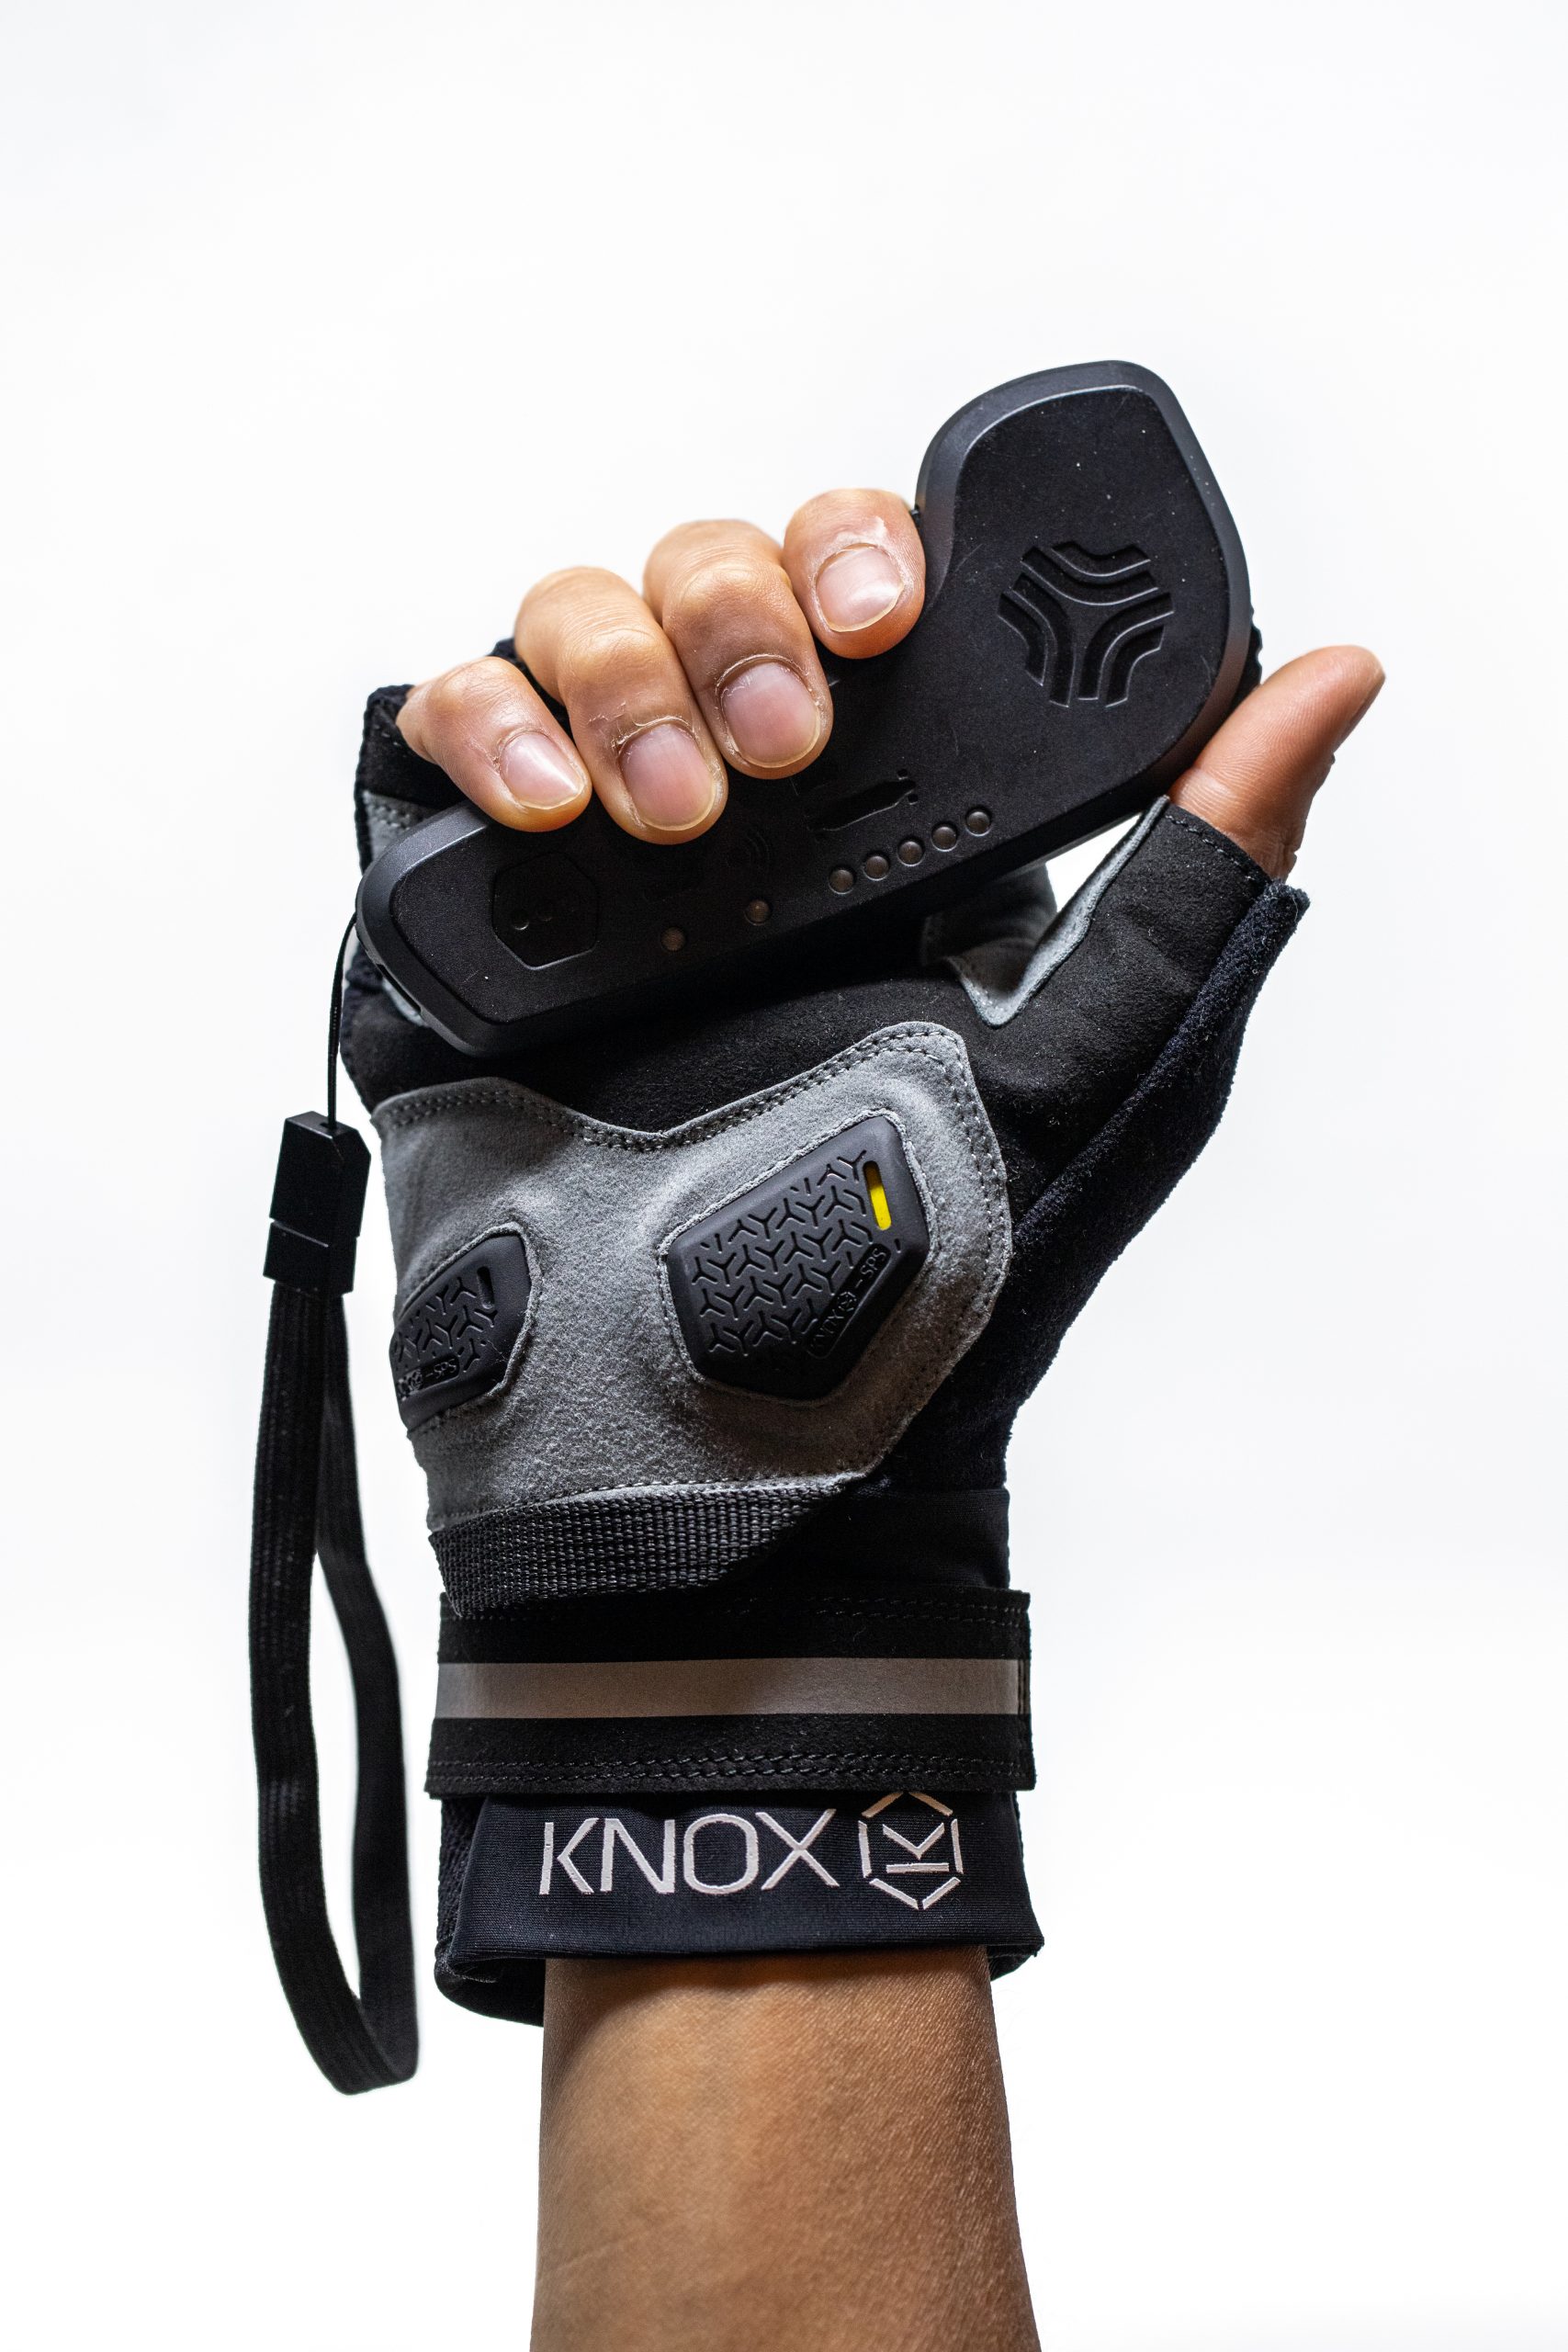 Ærlighed Alperne Varme Fingerless Pro E-Skate Glove from flatland3d and Knox - electric  skateboarding glove